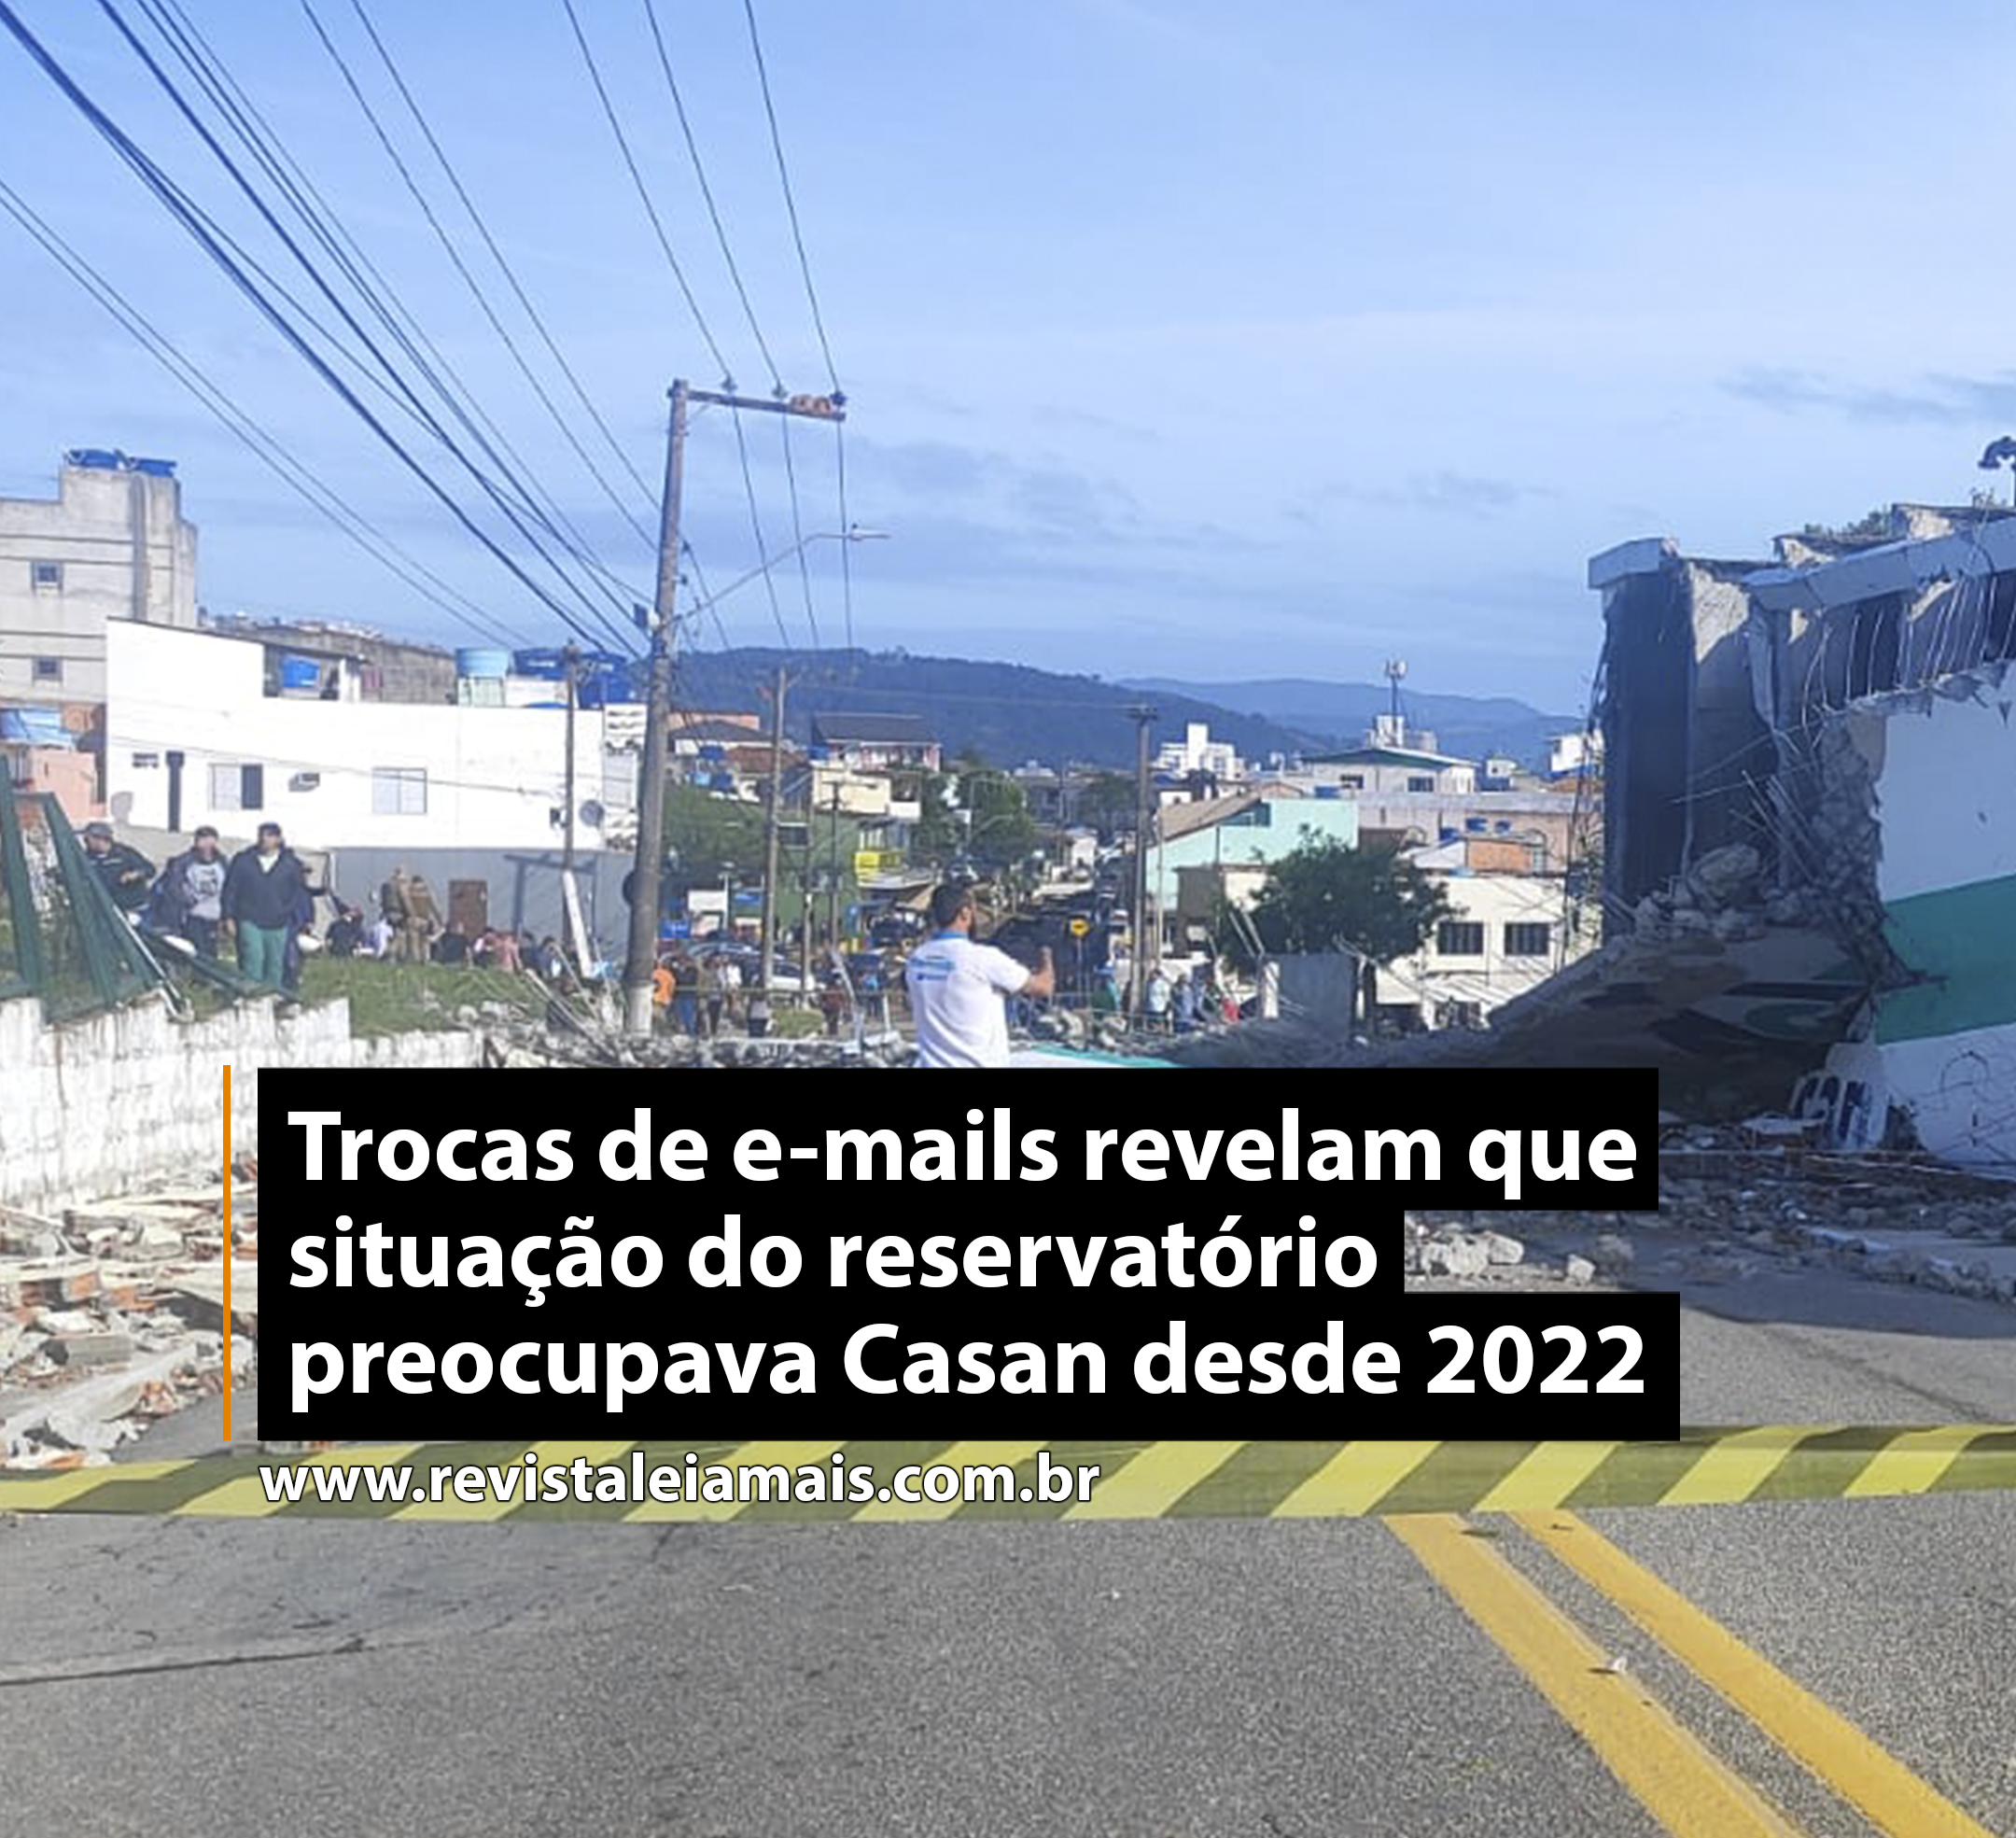 Trocas de e-mails revelam que situação do reservatório preocupava Casan desde 2022